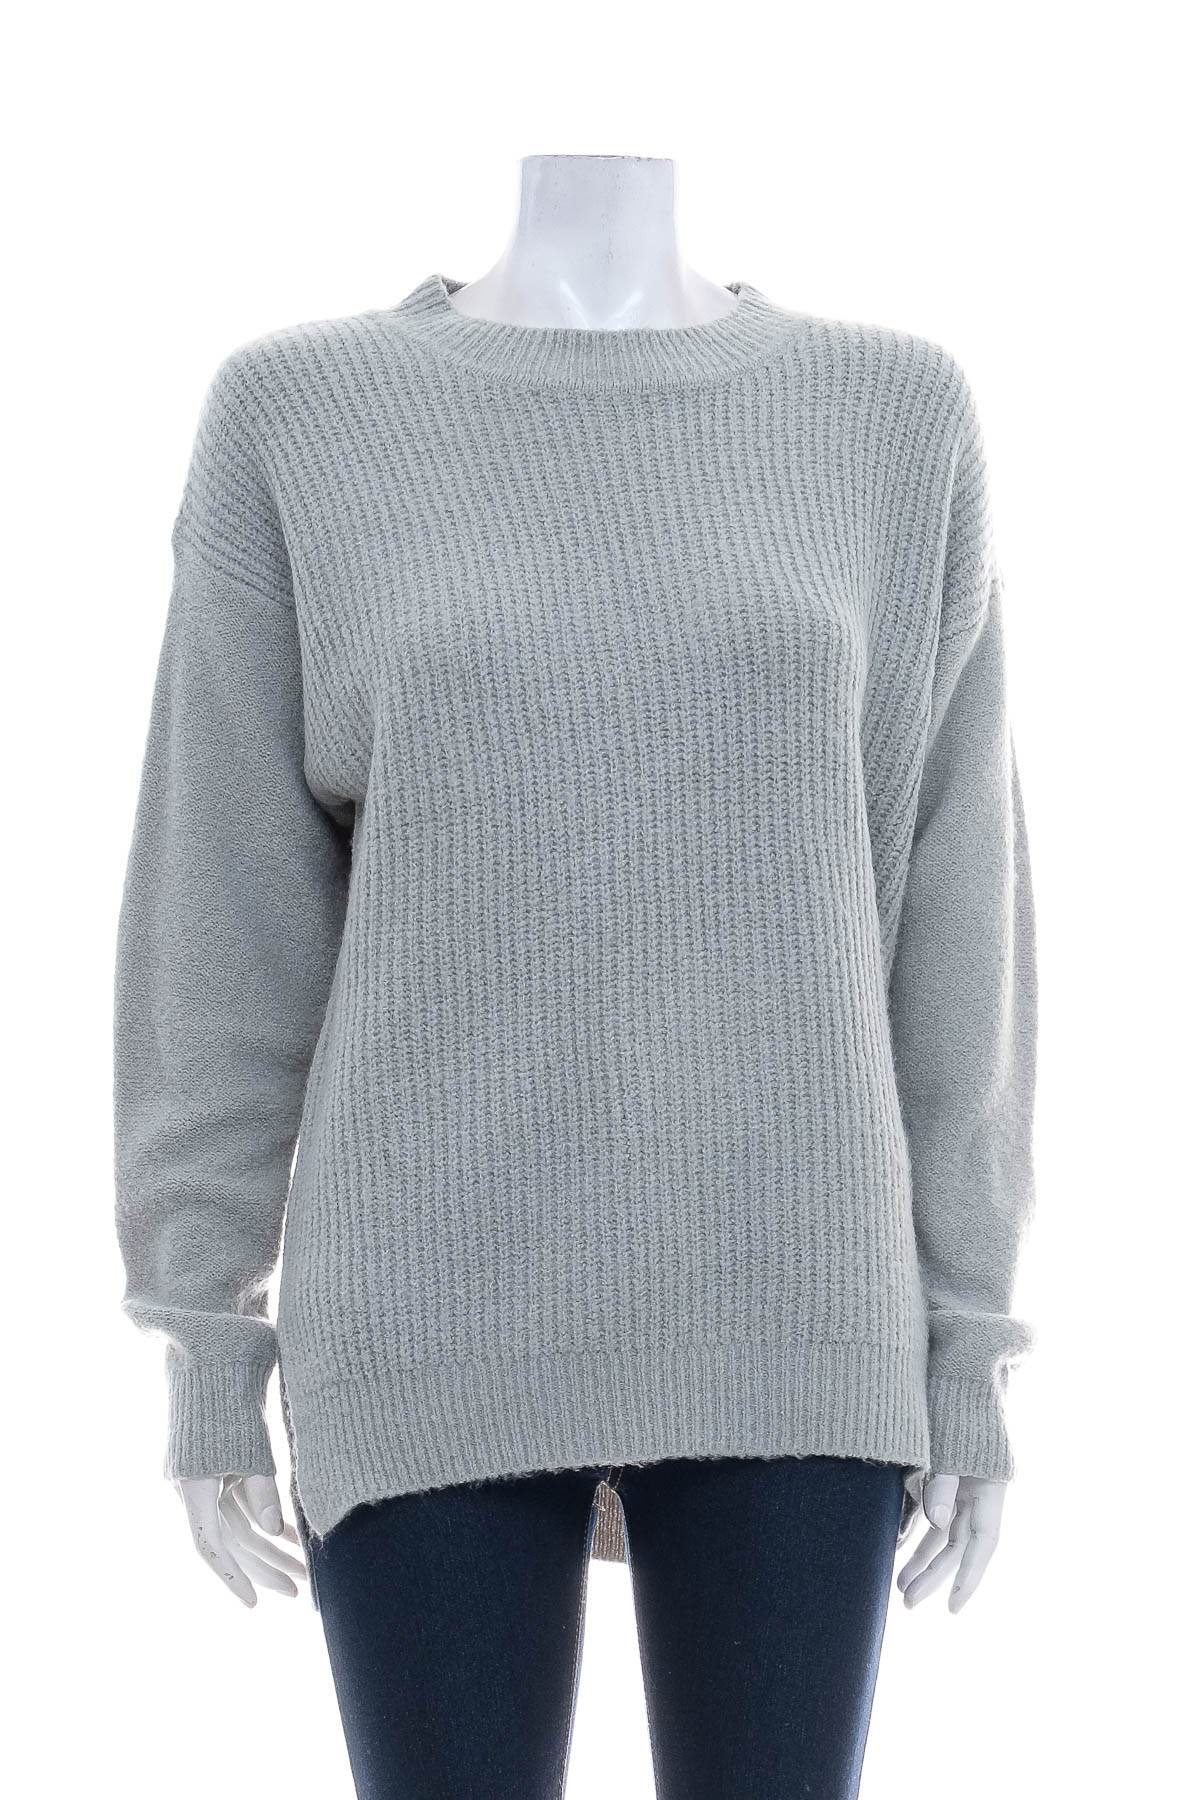 Women's sweater - KHOKO - 0